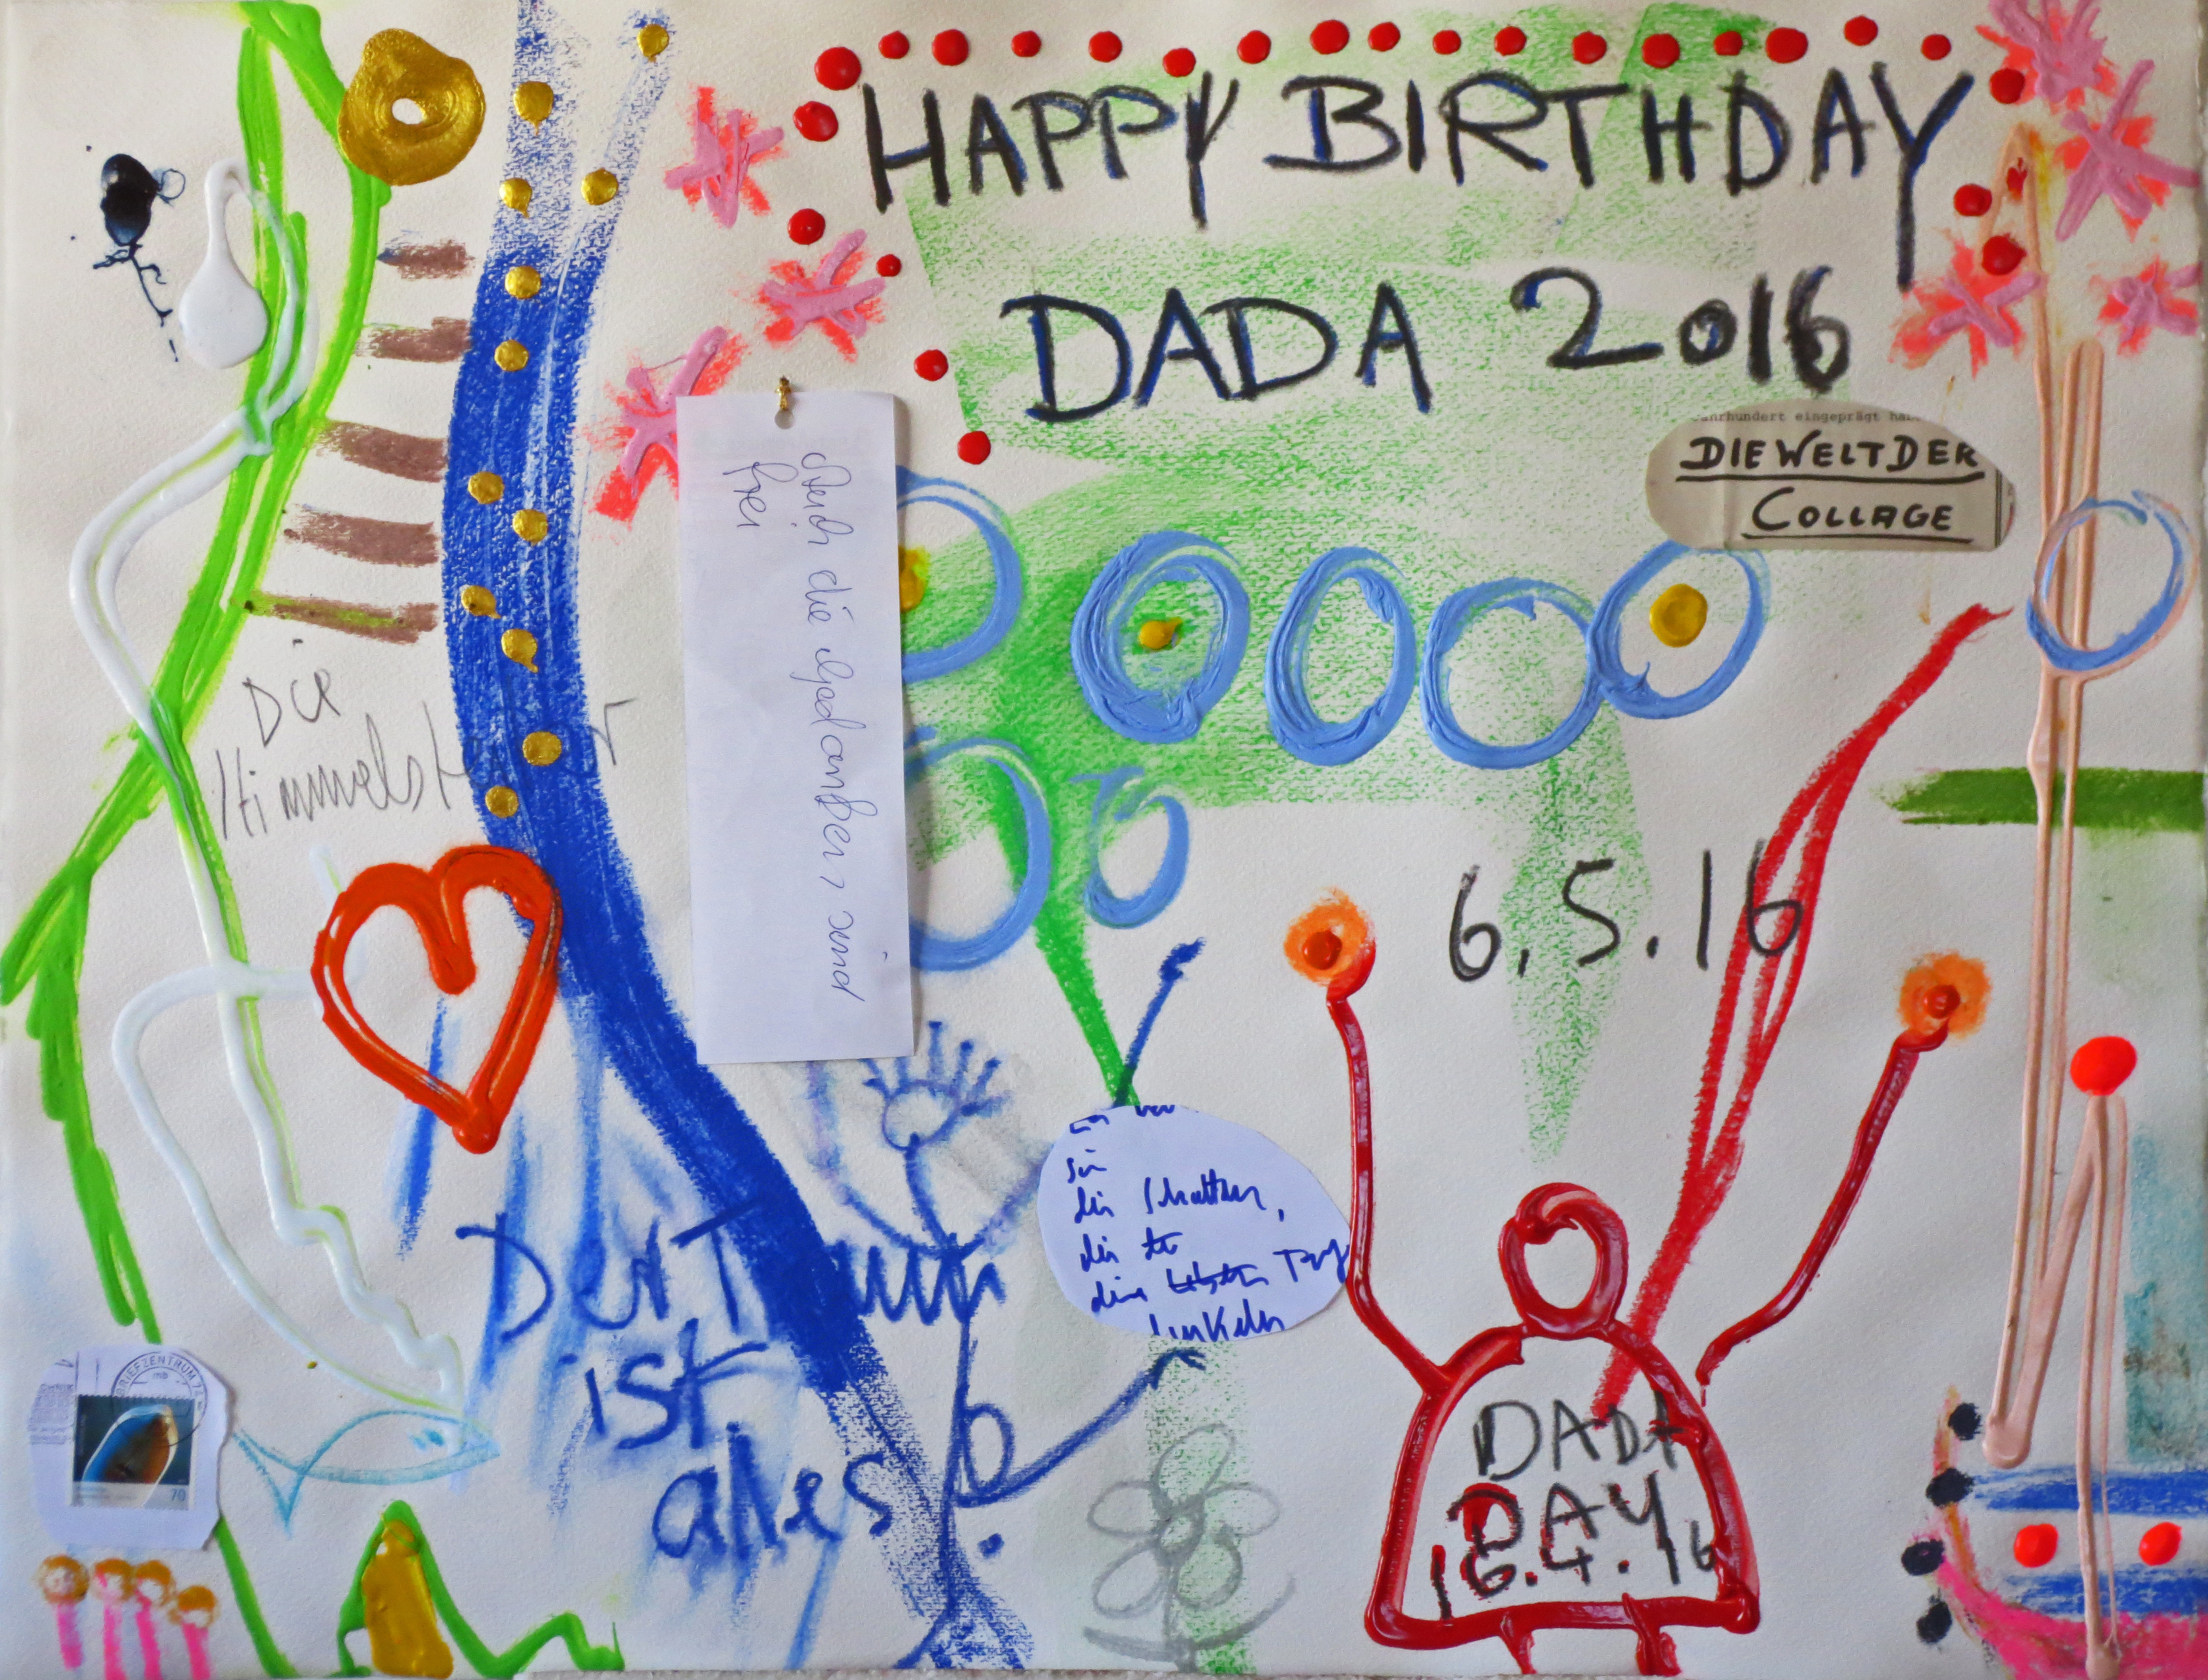 20160506_Happy Birthday Dada_Mischtechnik/Collage